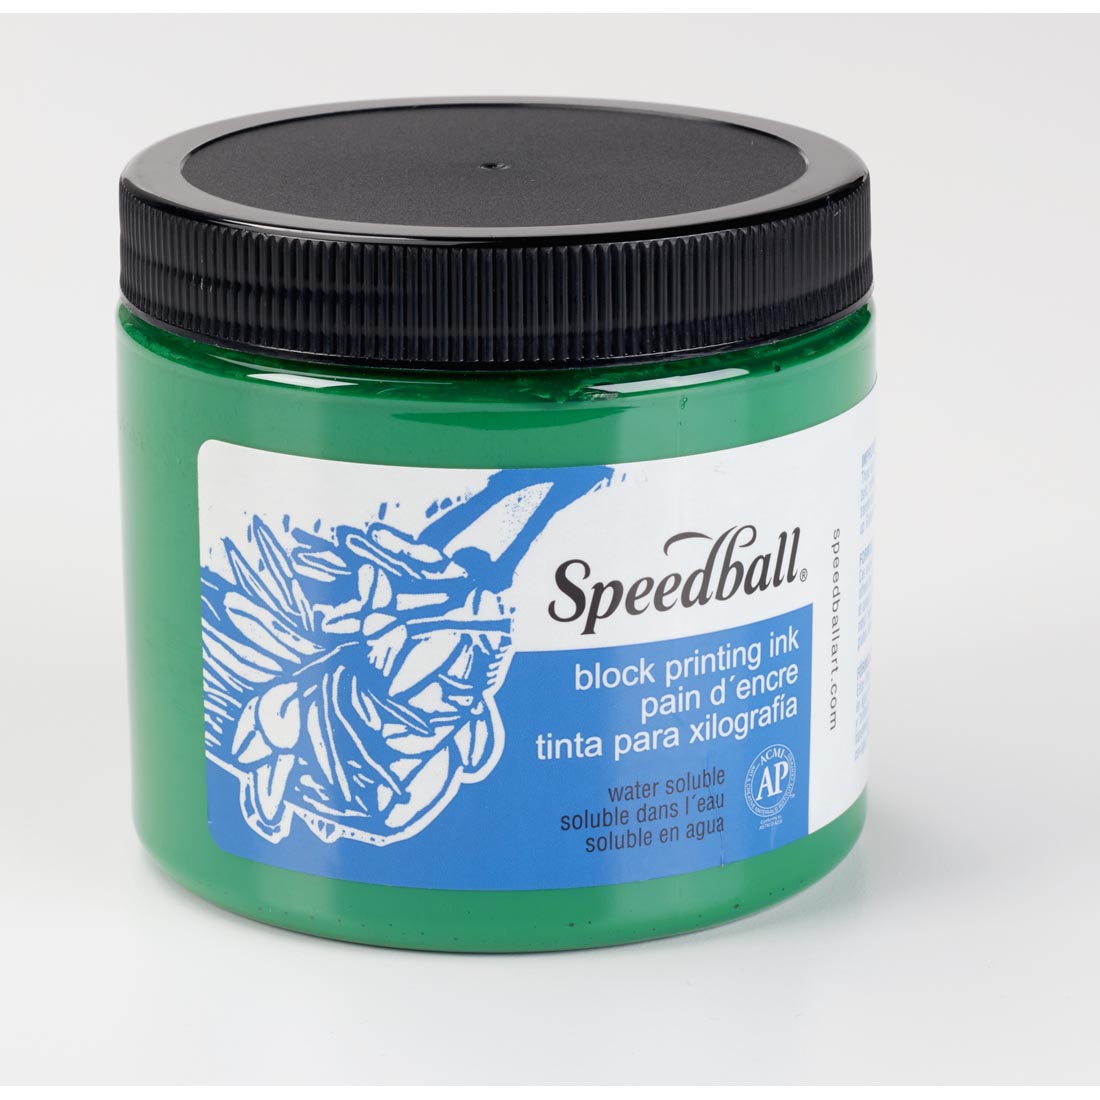 Jar of Green Speedball Water-Soluble Block Printing Ink